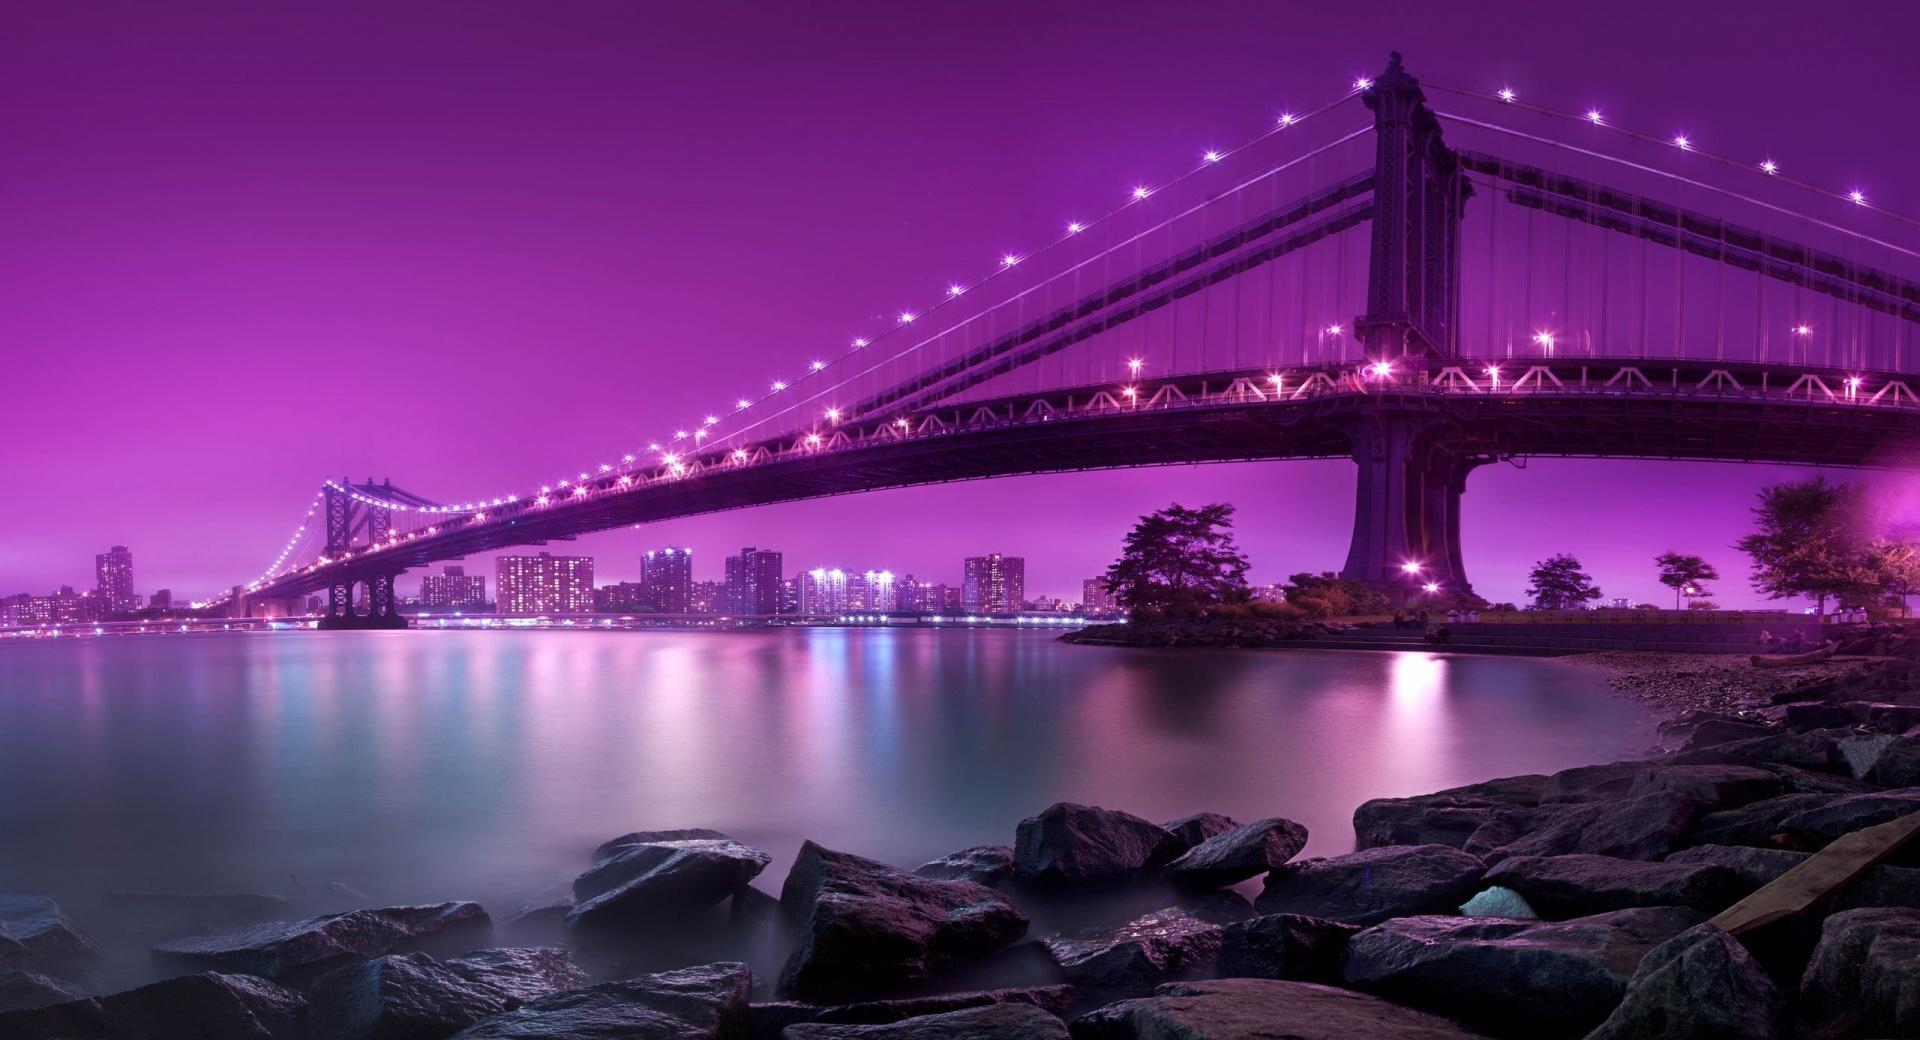 Bridge, Purple Light at 1024 x 1024 iPad size wallpapers HD quality